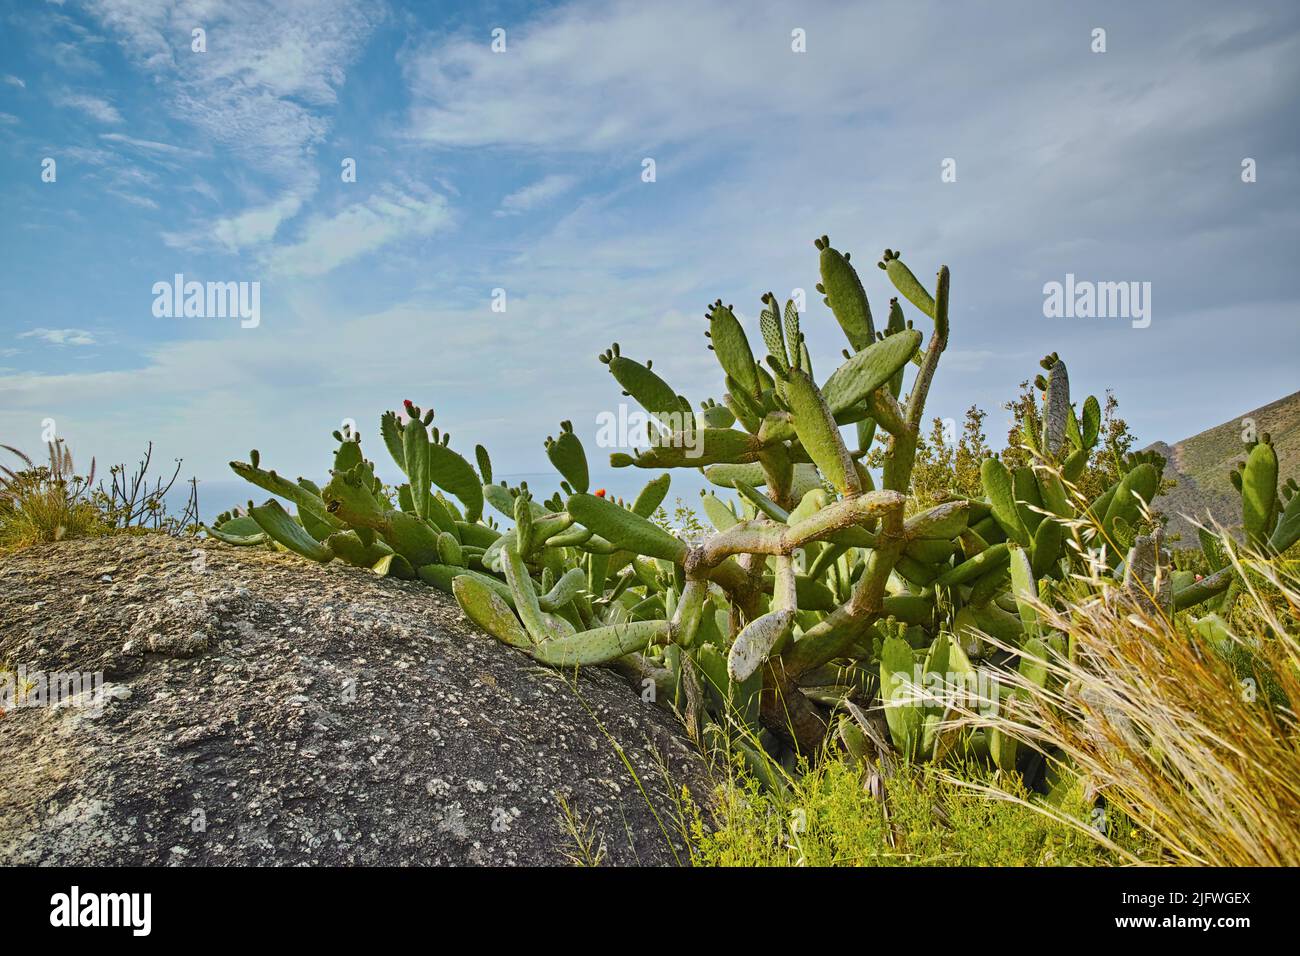 Nahaufnahme von Sukkulenten und wildem Gras, das zwischen Küstenfelsen wächst. An einem bewölkten Tag wachsen unbeugte südafrikanische Pflanzen am Meer. Fynbos und Kakteen Stockfoto